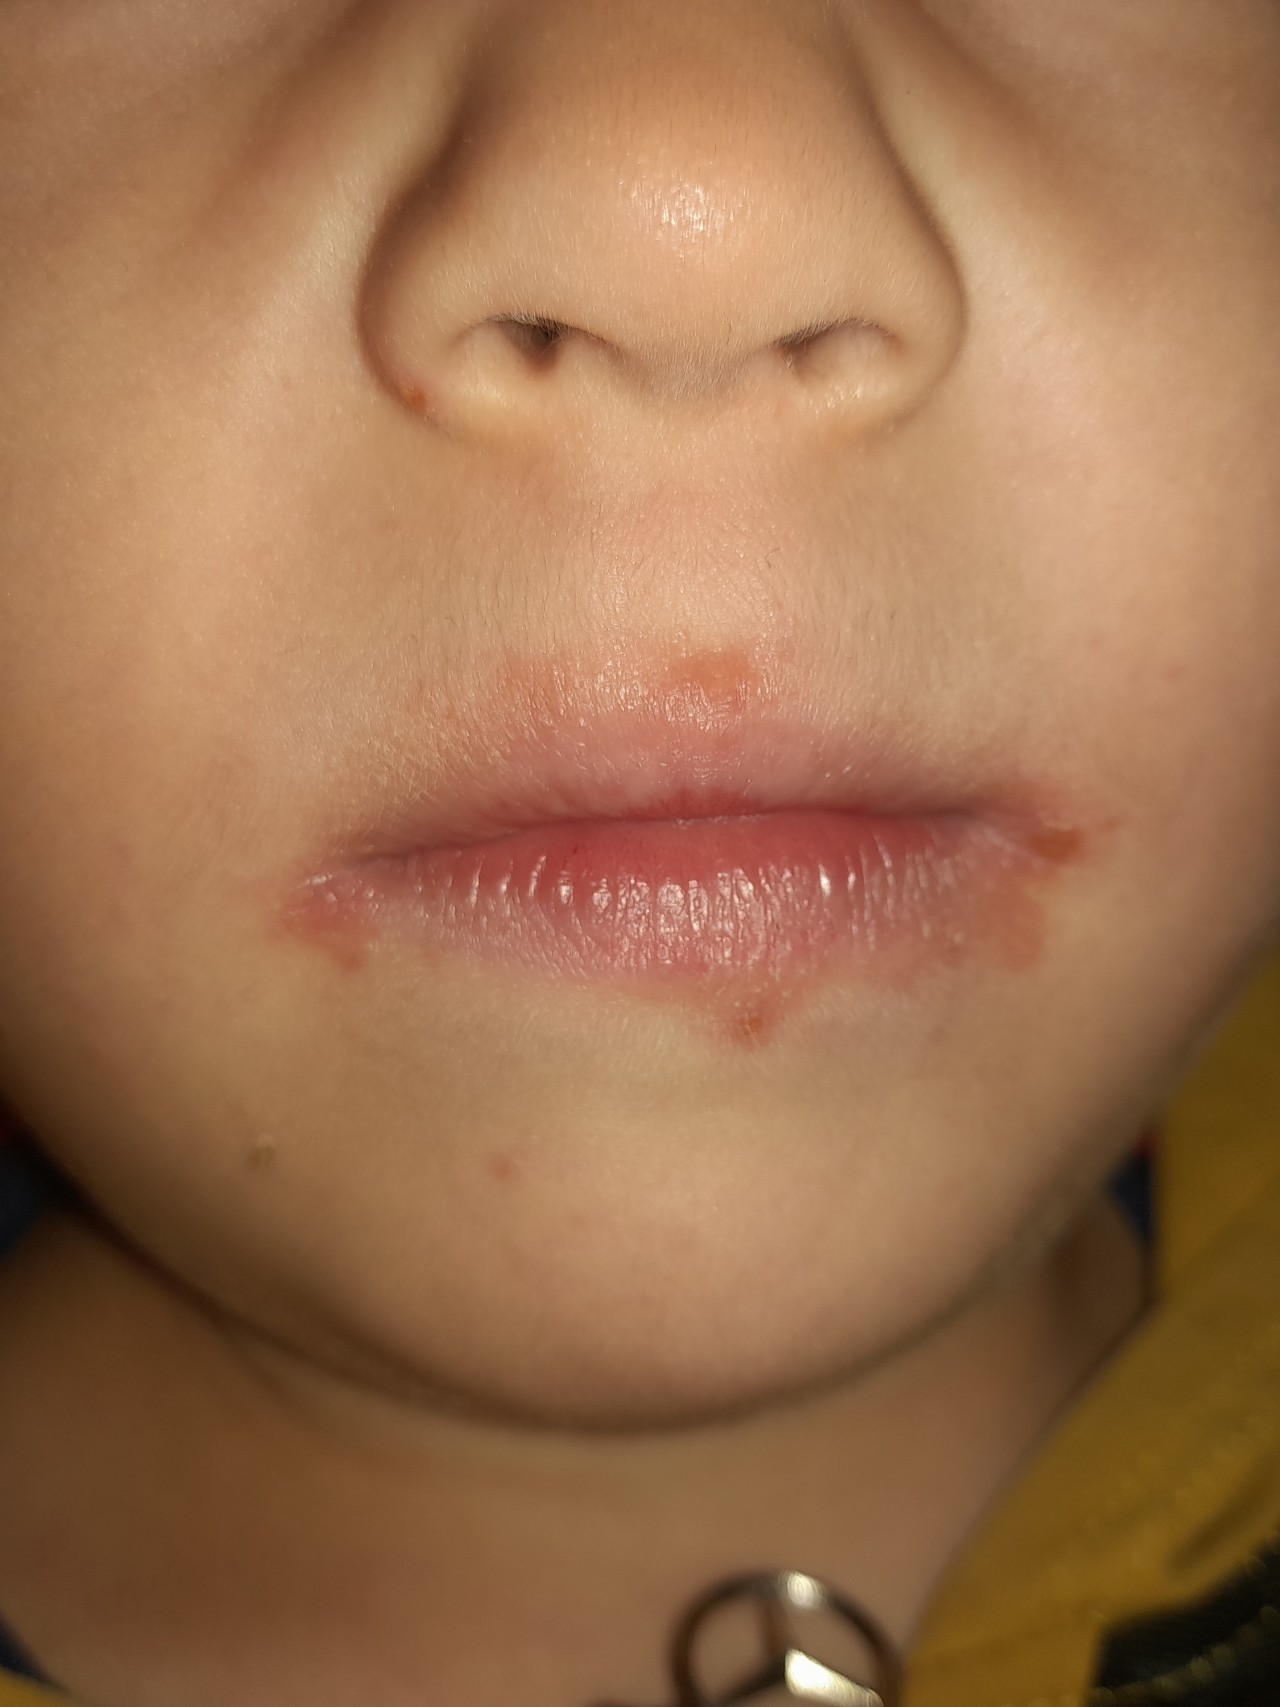 Кожный дерматит у ребенка фото